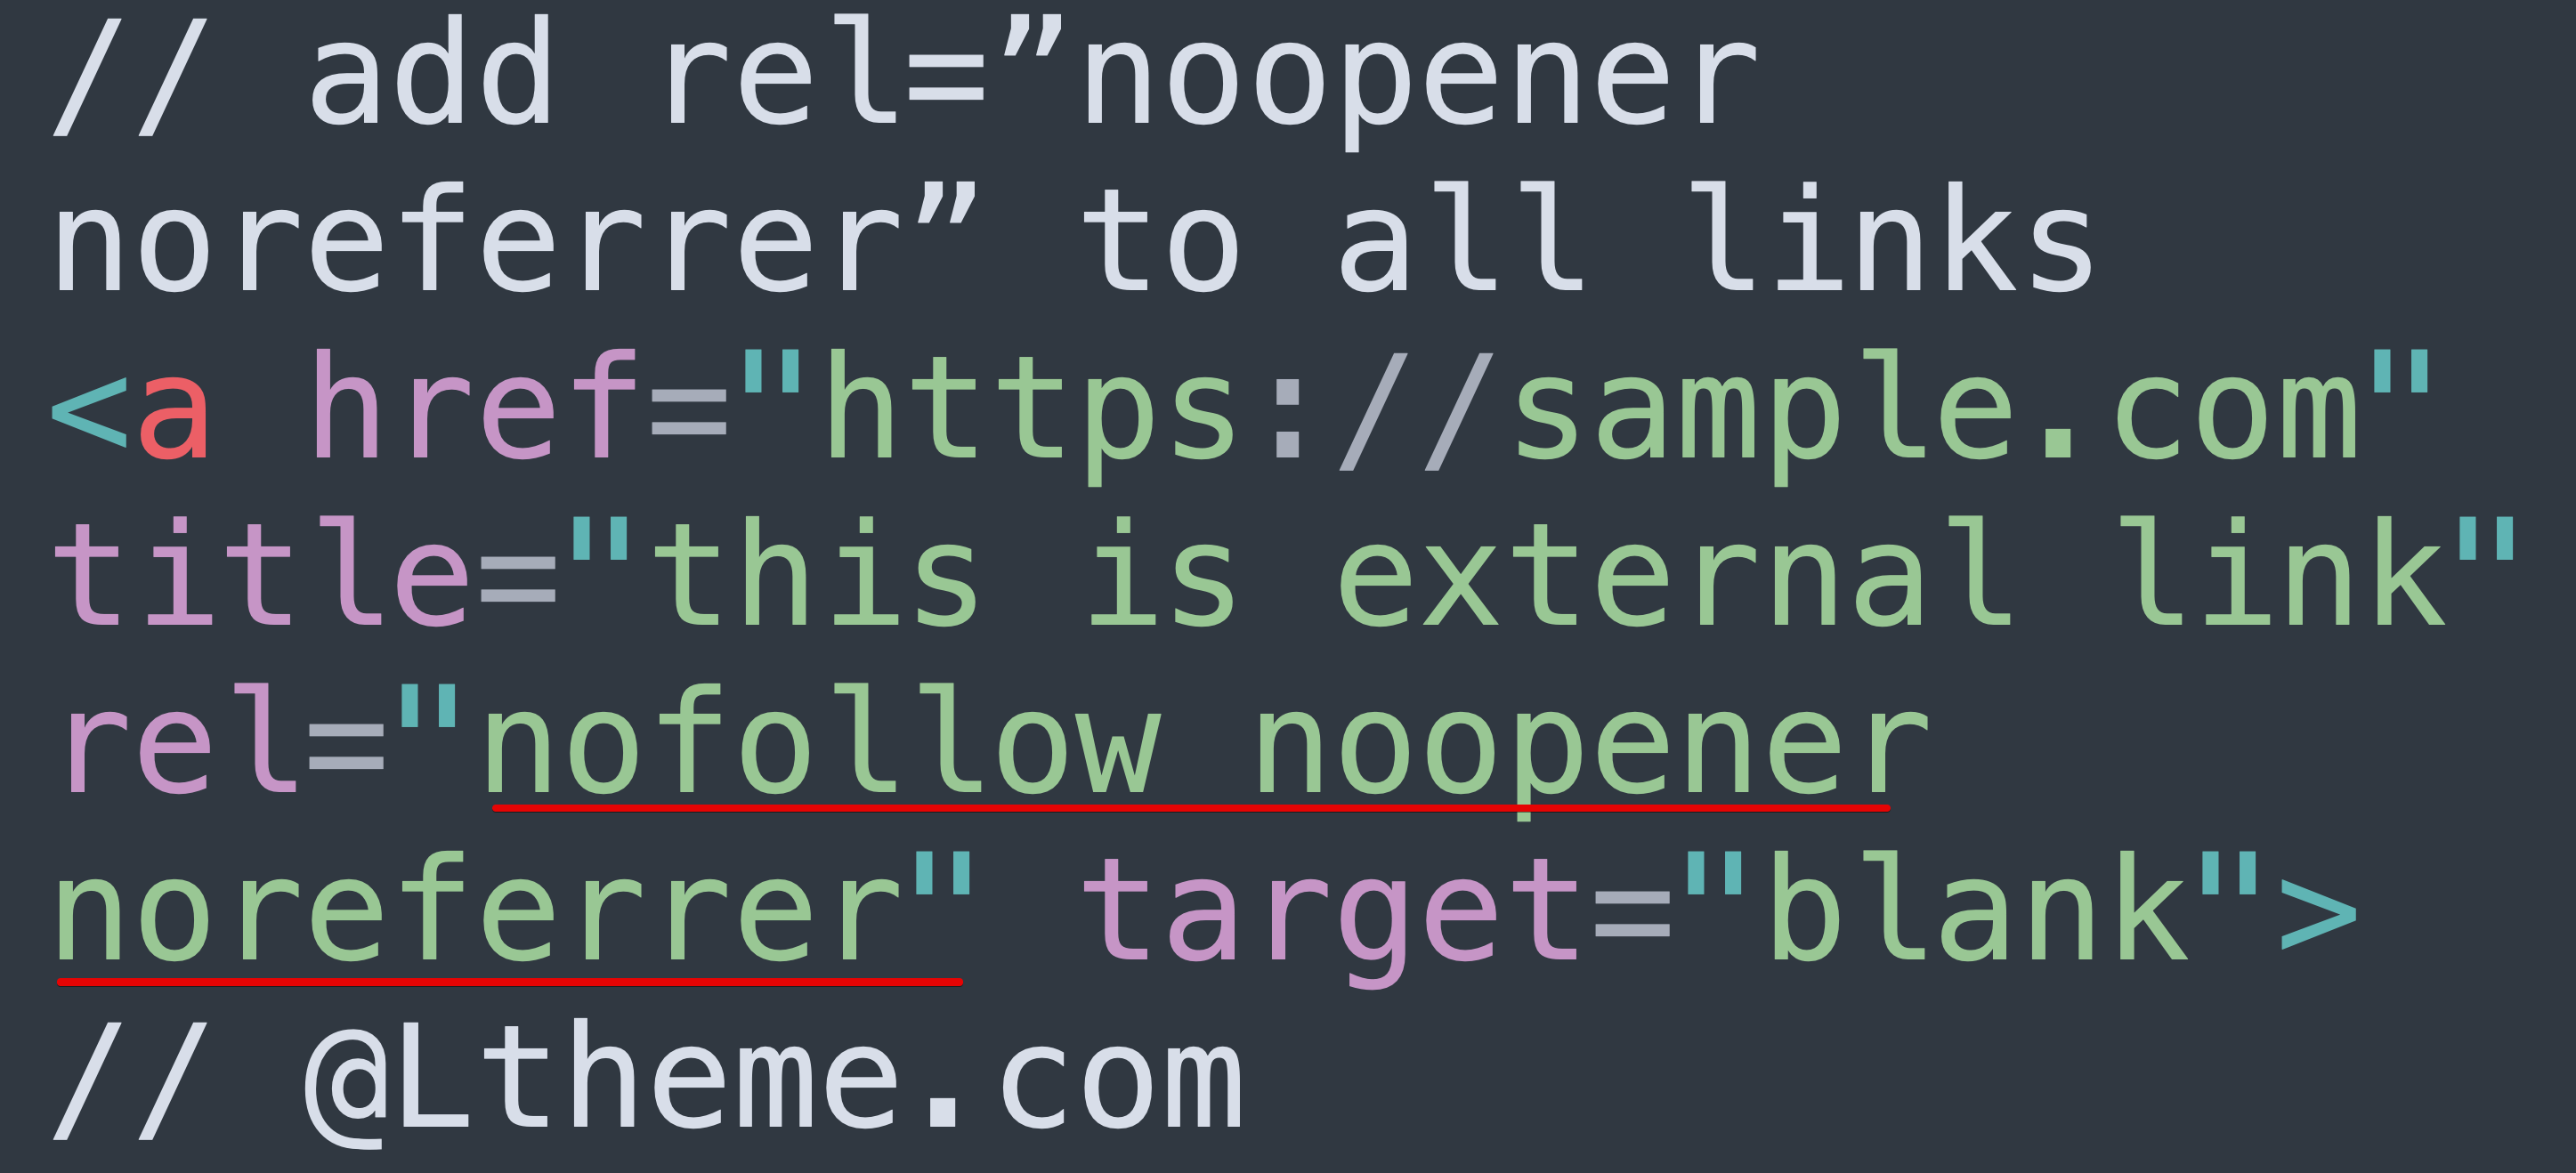 rel="noopener noreferrer" in Joomla